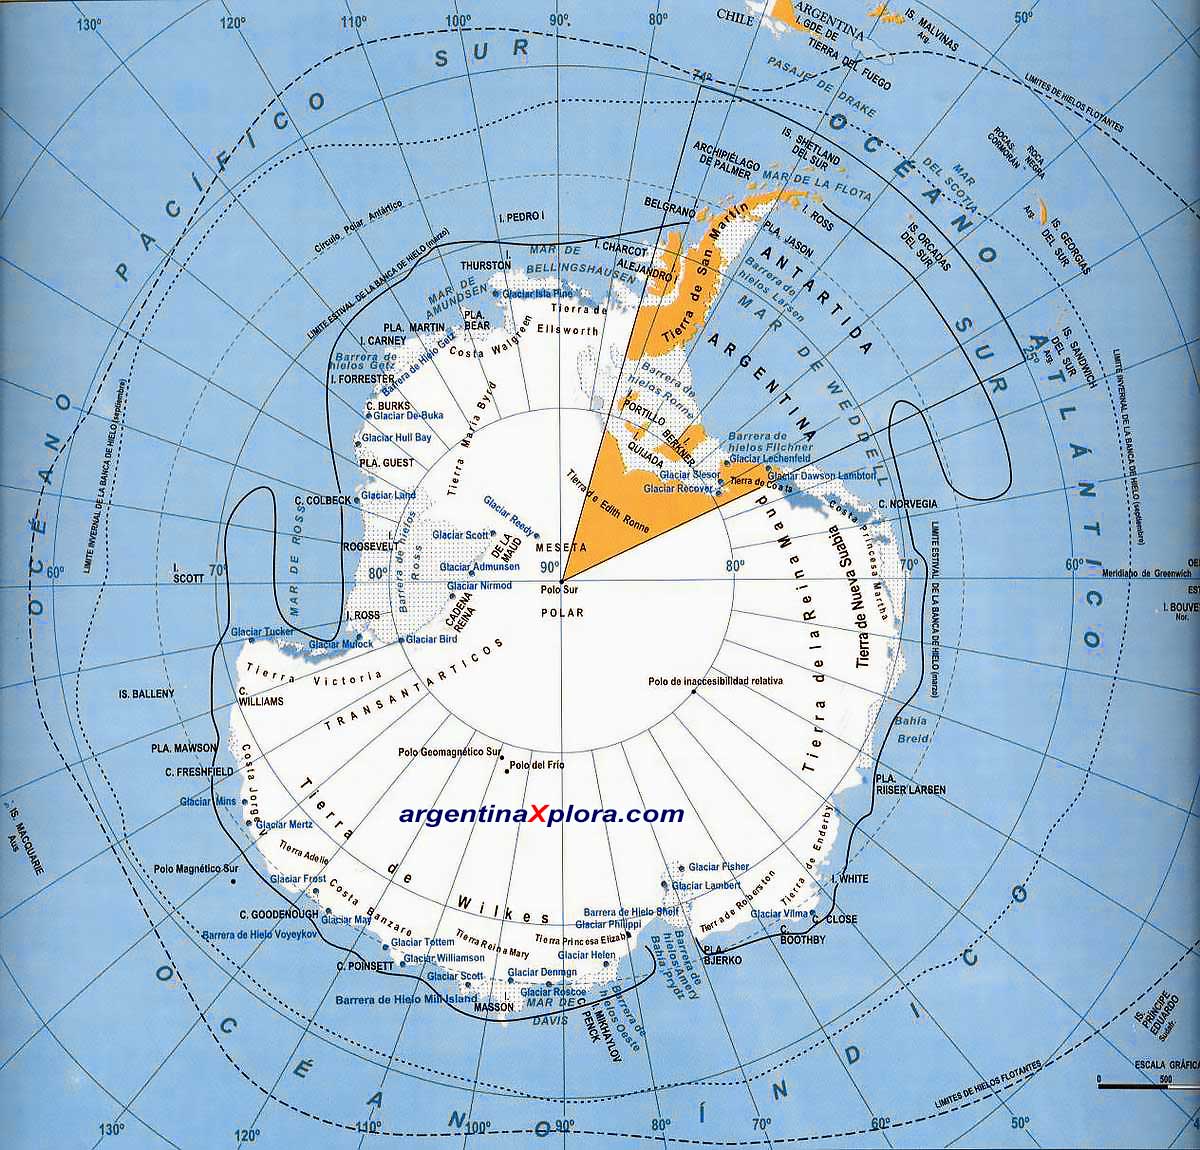 Mapa del Continente Antártico y Circunnavegación -Límites de las barreras de hielo y de hielos flotantes. Polo Sur y Polo Geomagnético Austral 